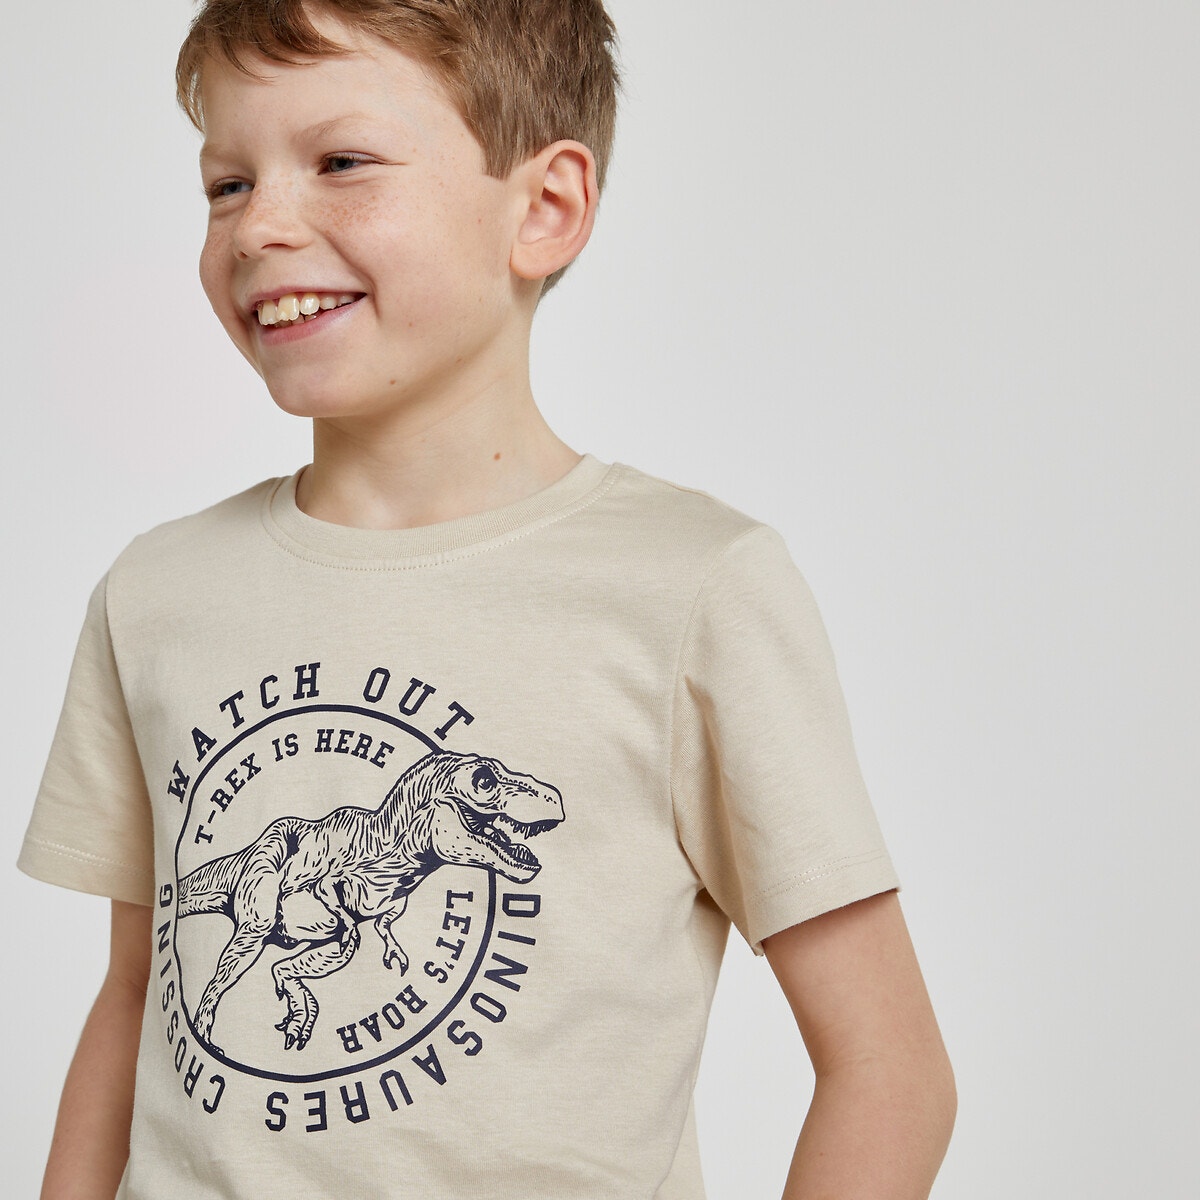 Μόδα > Παιδικά > Αγόρι > T-shirt, πόλο > Κοντά μανίκια Κοντομάνικο T-shirt με στάμπα T-Rex